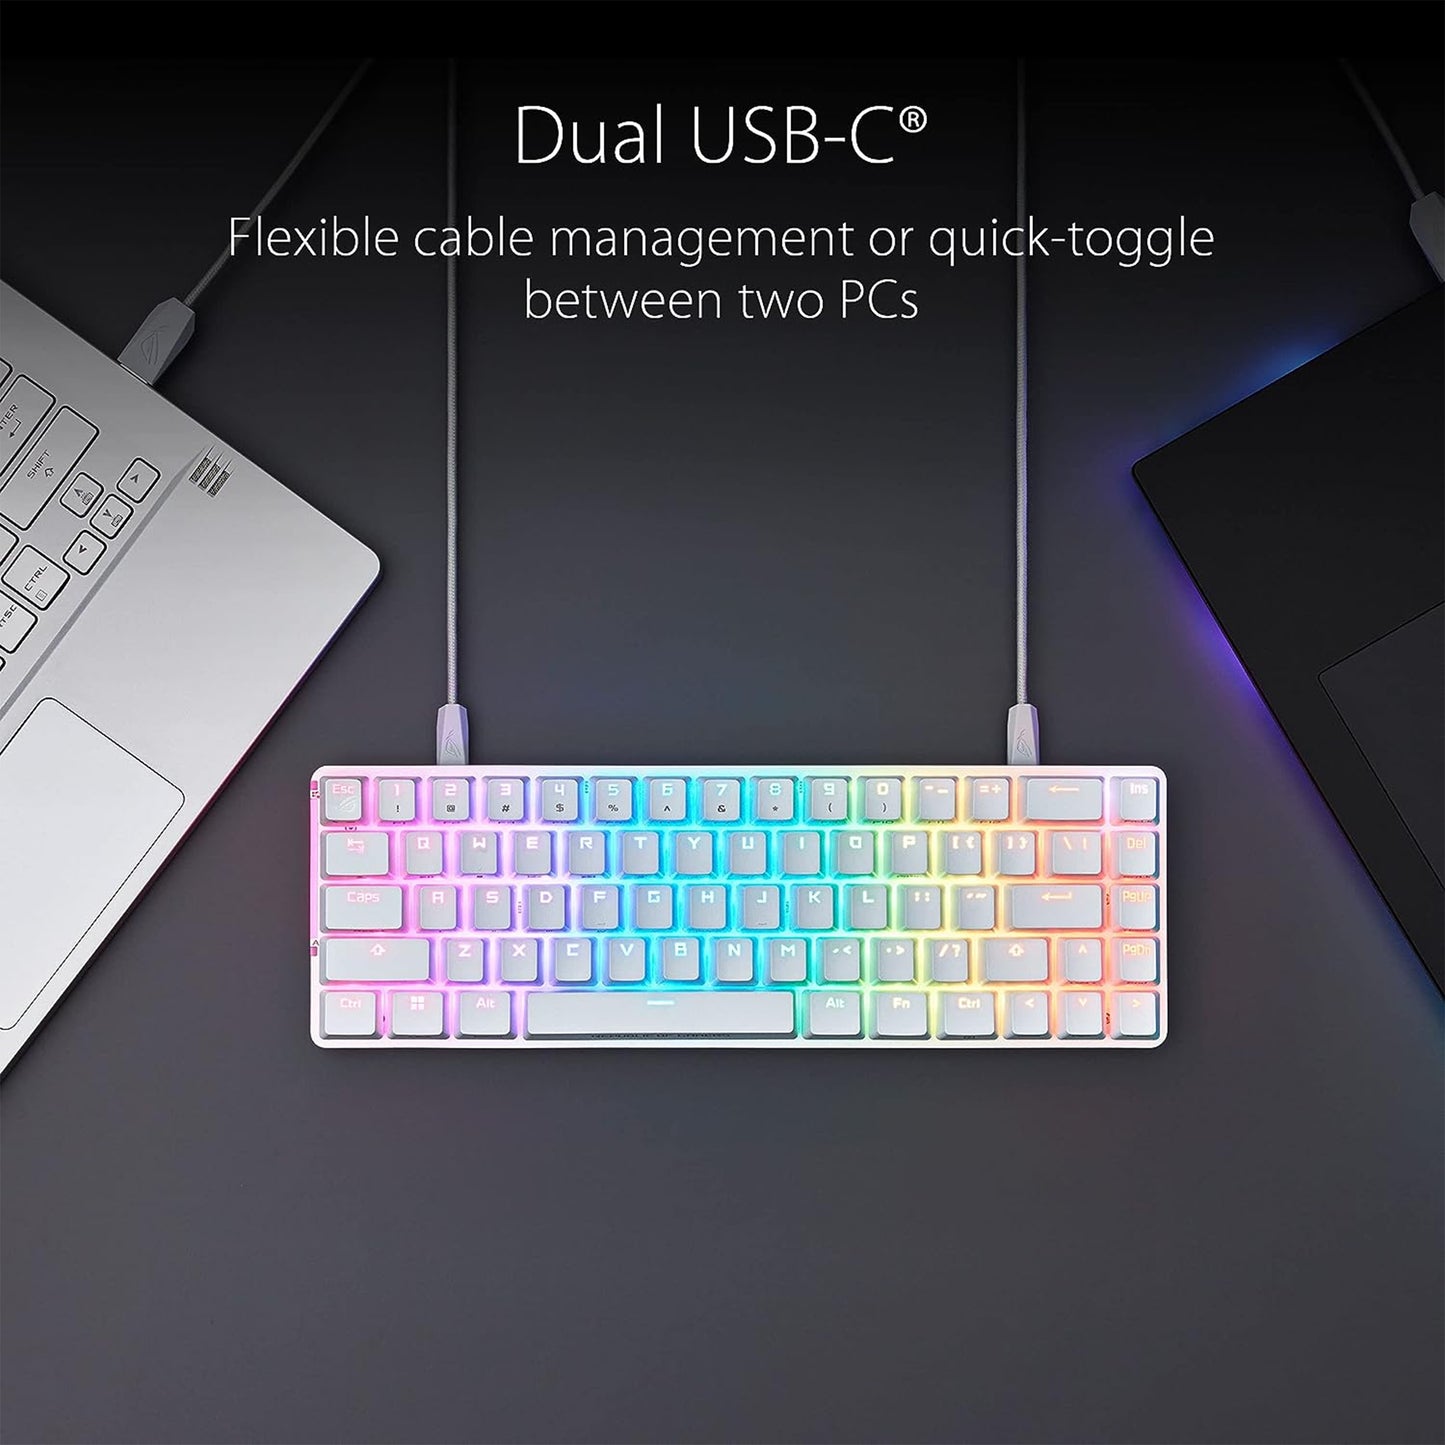 لوحة مفاتيح ميكانيكية مدمجة للألعاب ASUS ROG Falchion Ace 65% RGB، ومفاتيح ROG NX بنية ومثبتات مفاتيح، وإسفنج مثبط الصوت، وأغطية مفاتيح PBT، سلكية مع KVM، وثلاث زوايا، وغطاء غطاء أبيض 